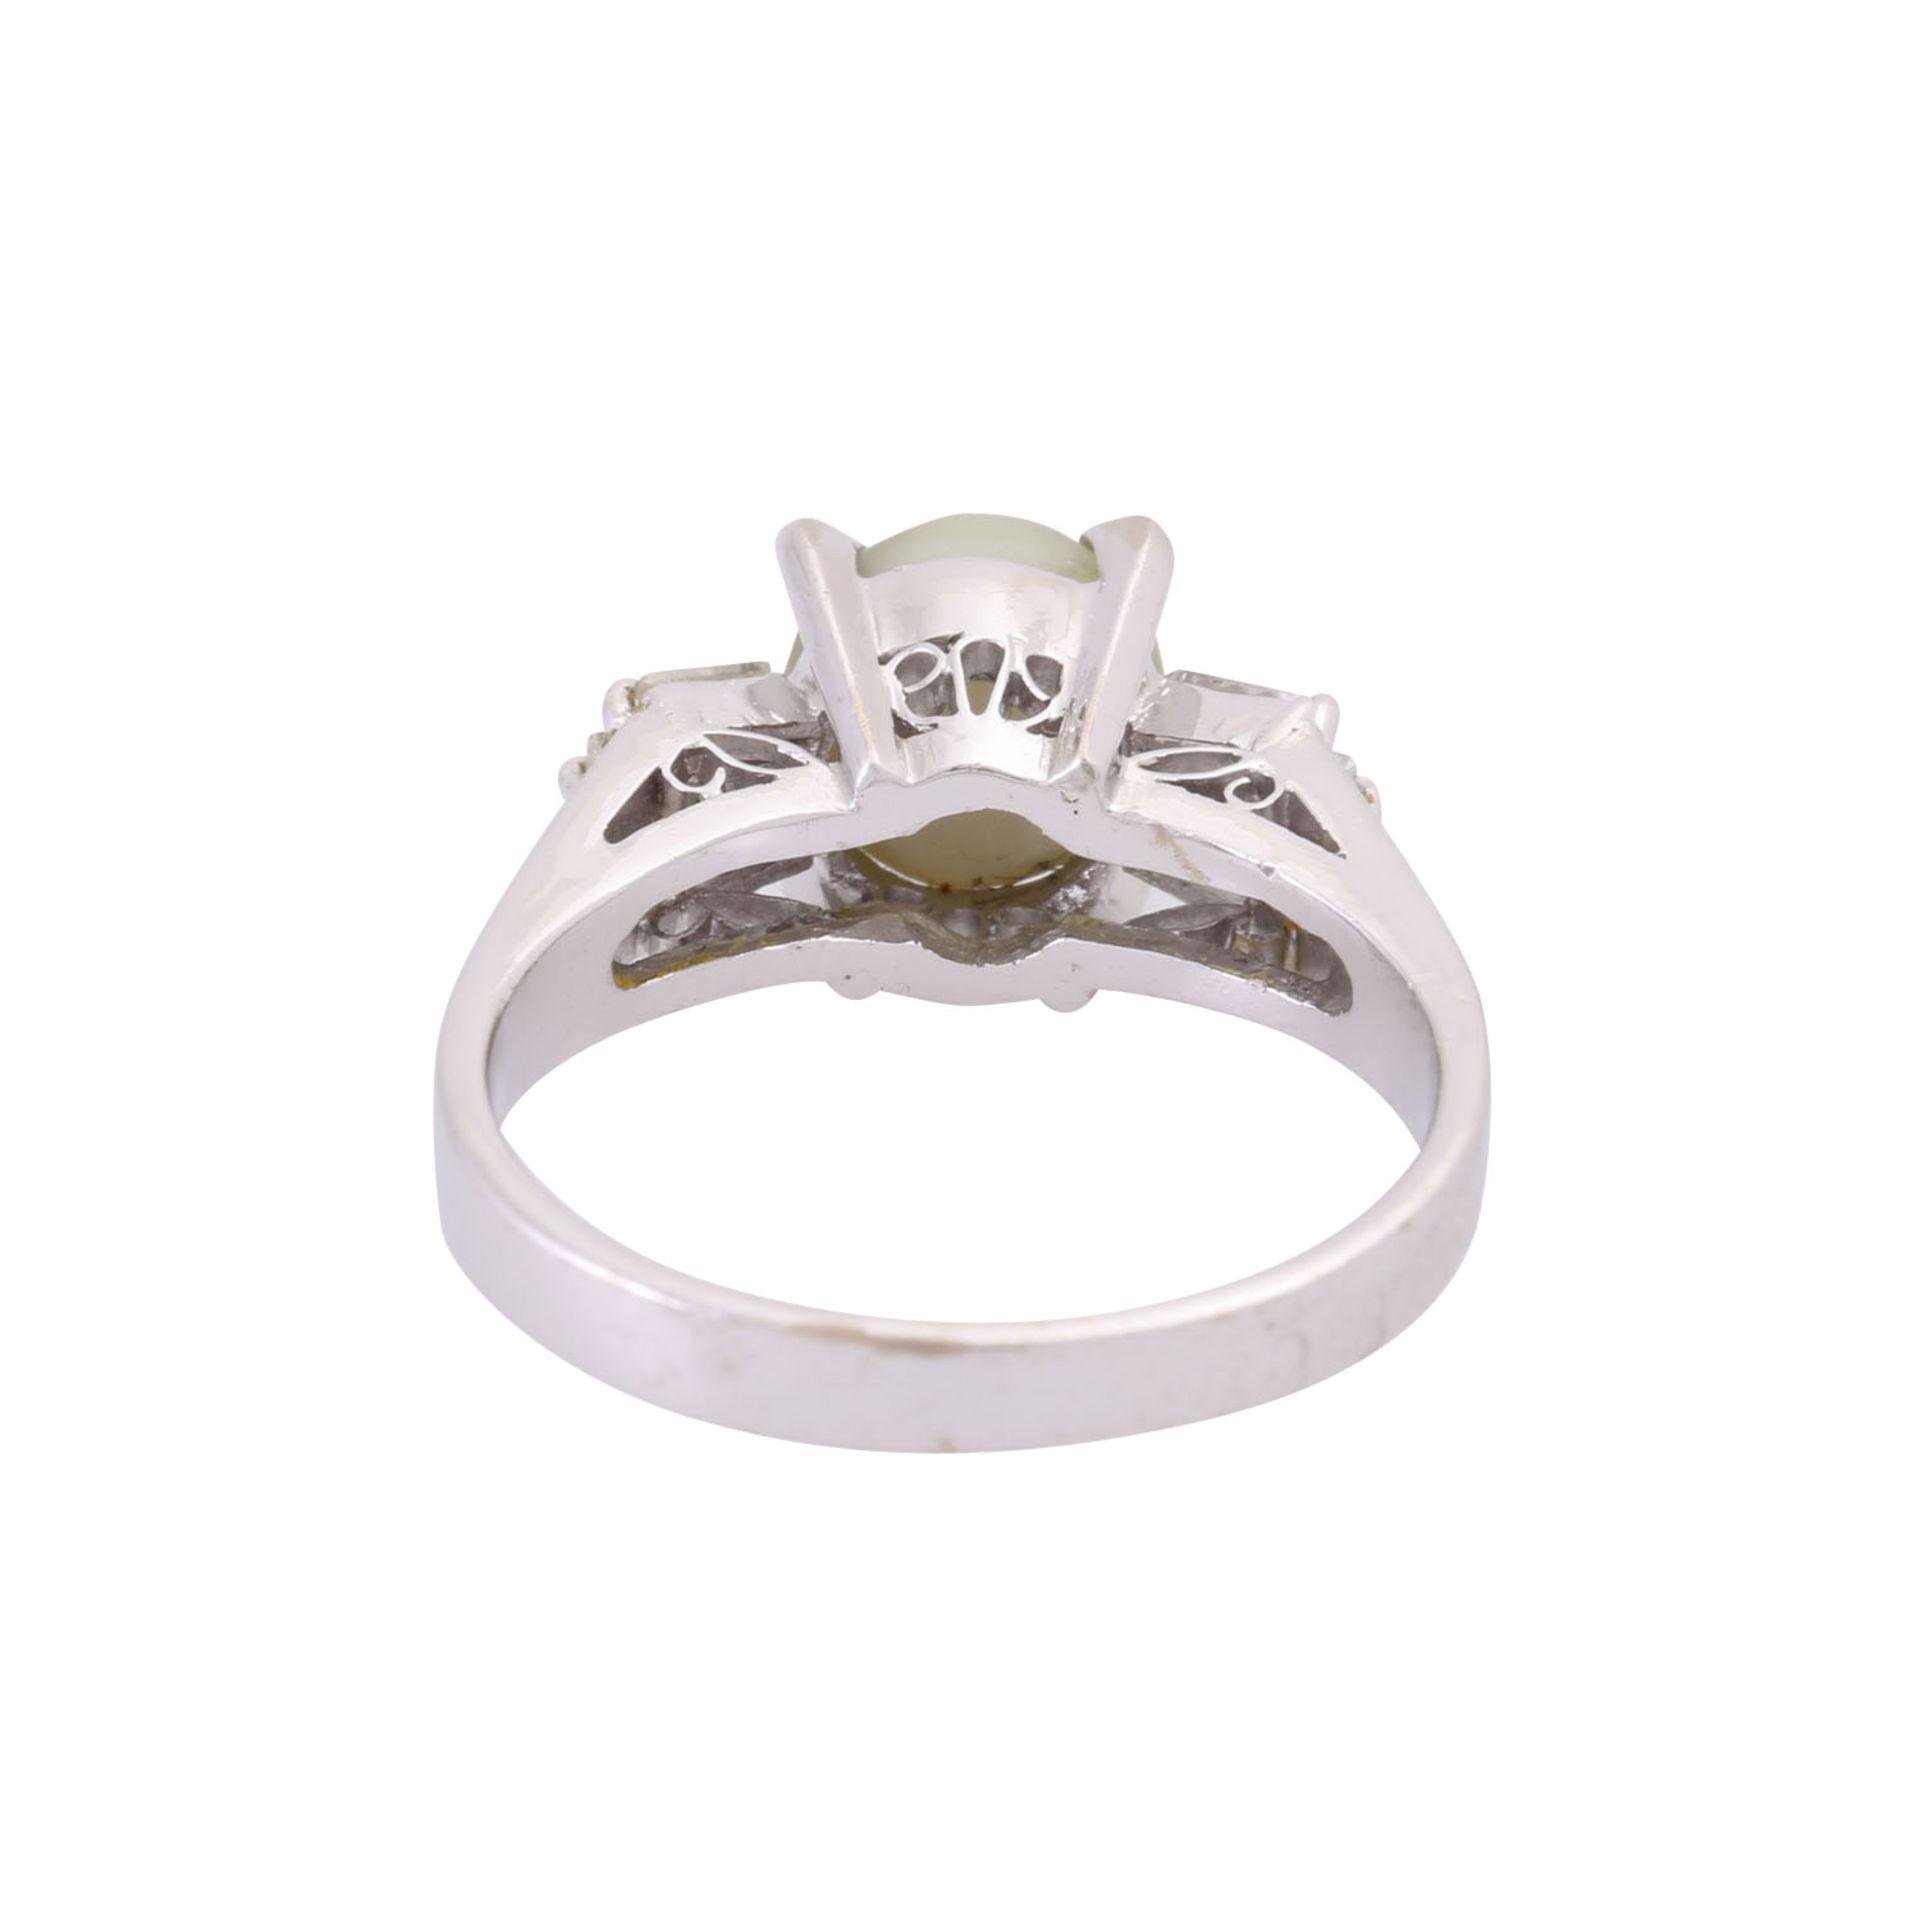 Ring mit Chrysoberyllkatzenauge flankiert von 6 Diamanttrapezen zus. ca. 0,5 ct, - Image 3 of 3